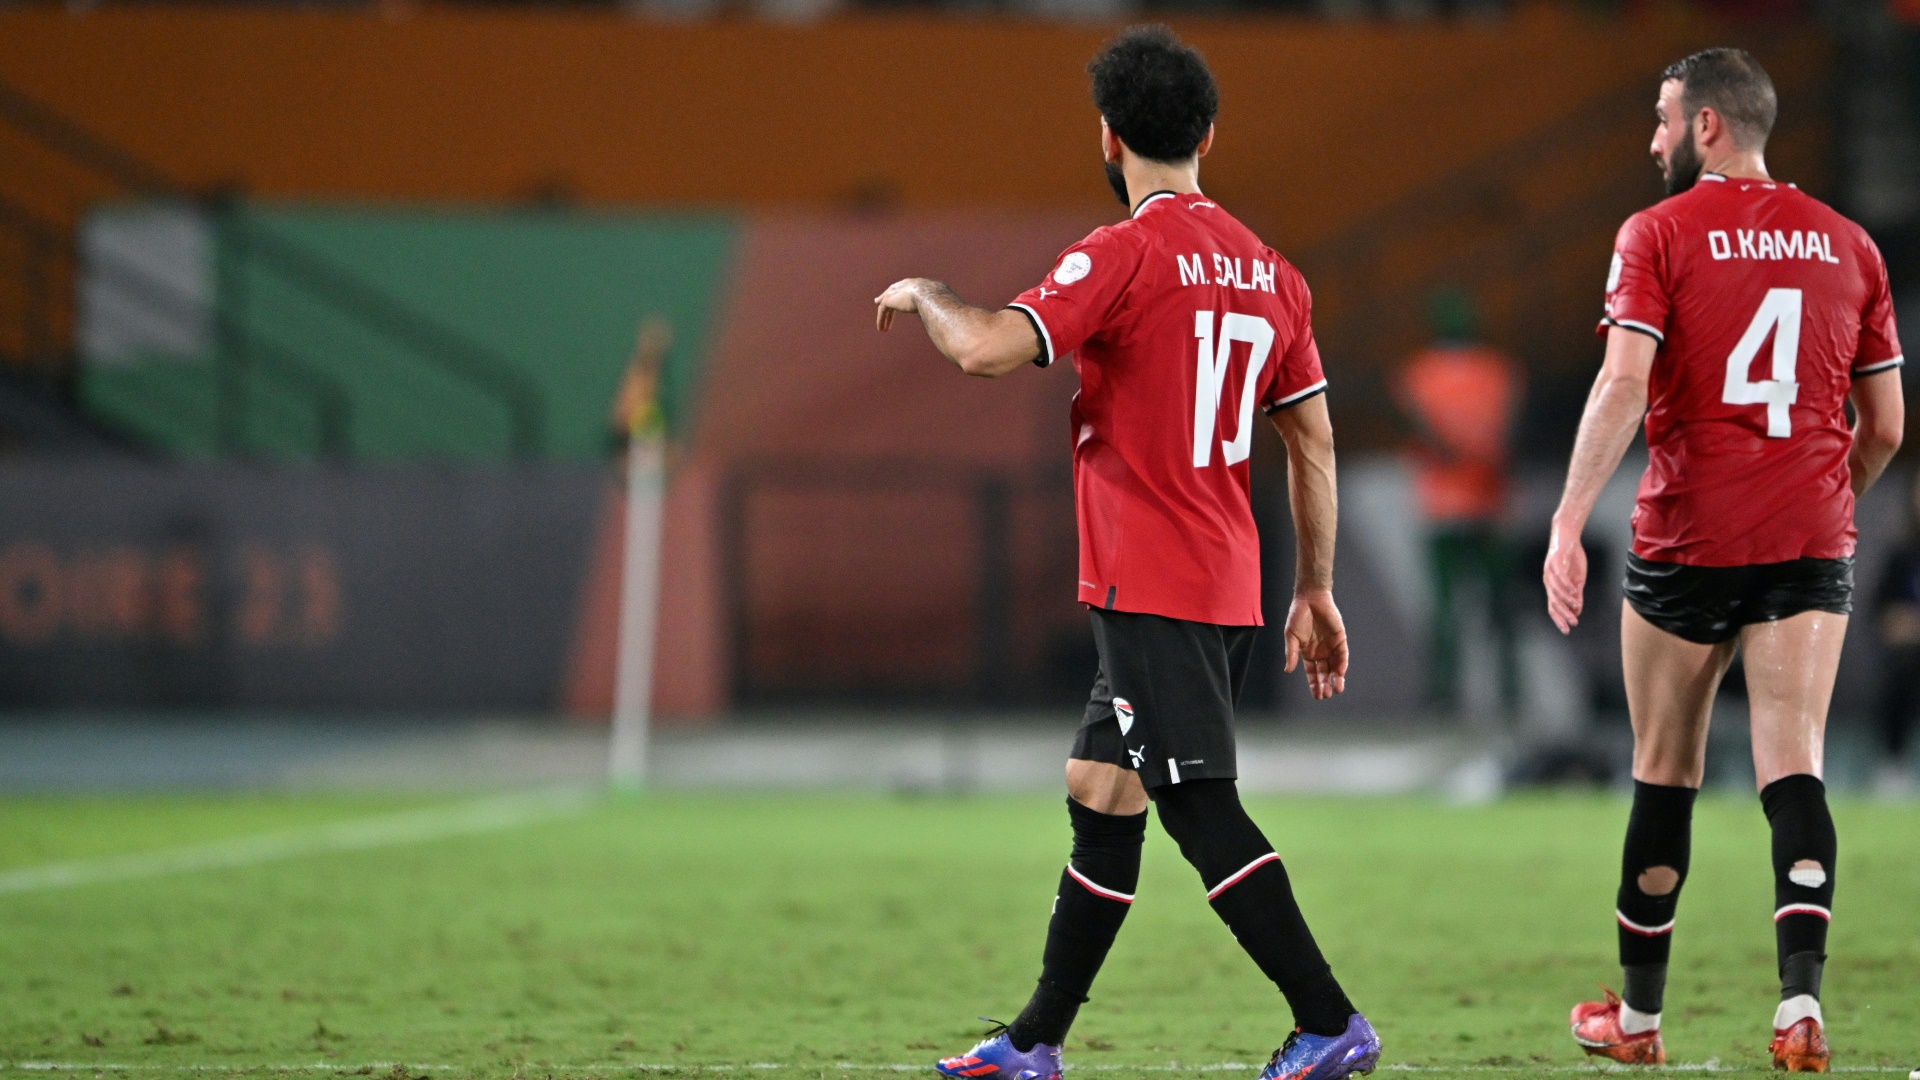 Verletzt vom Feld: Mohamed Salah